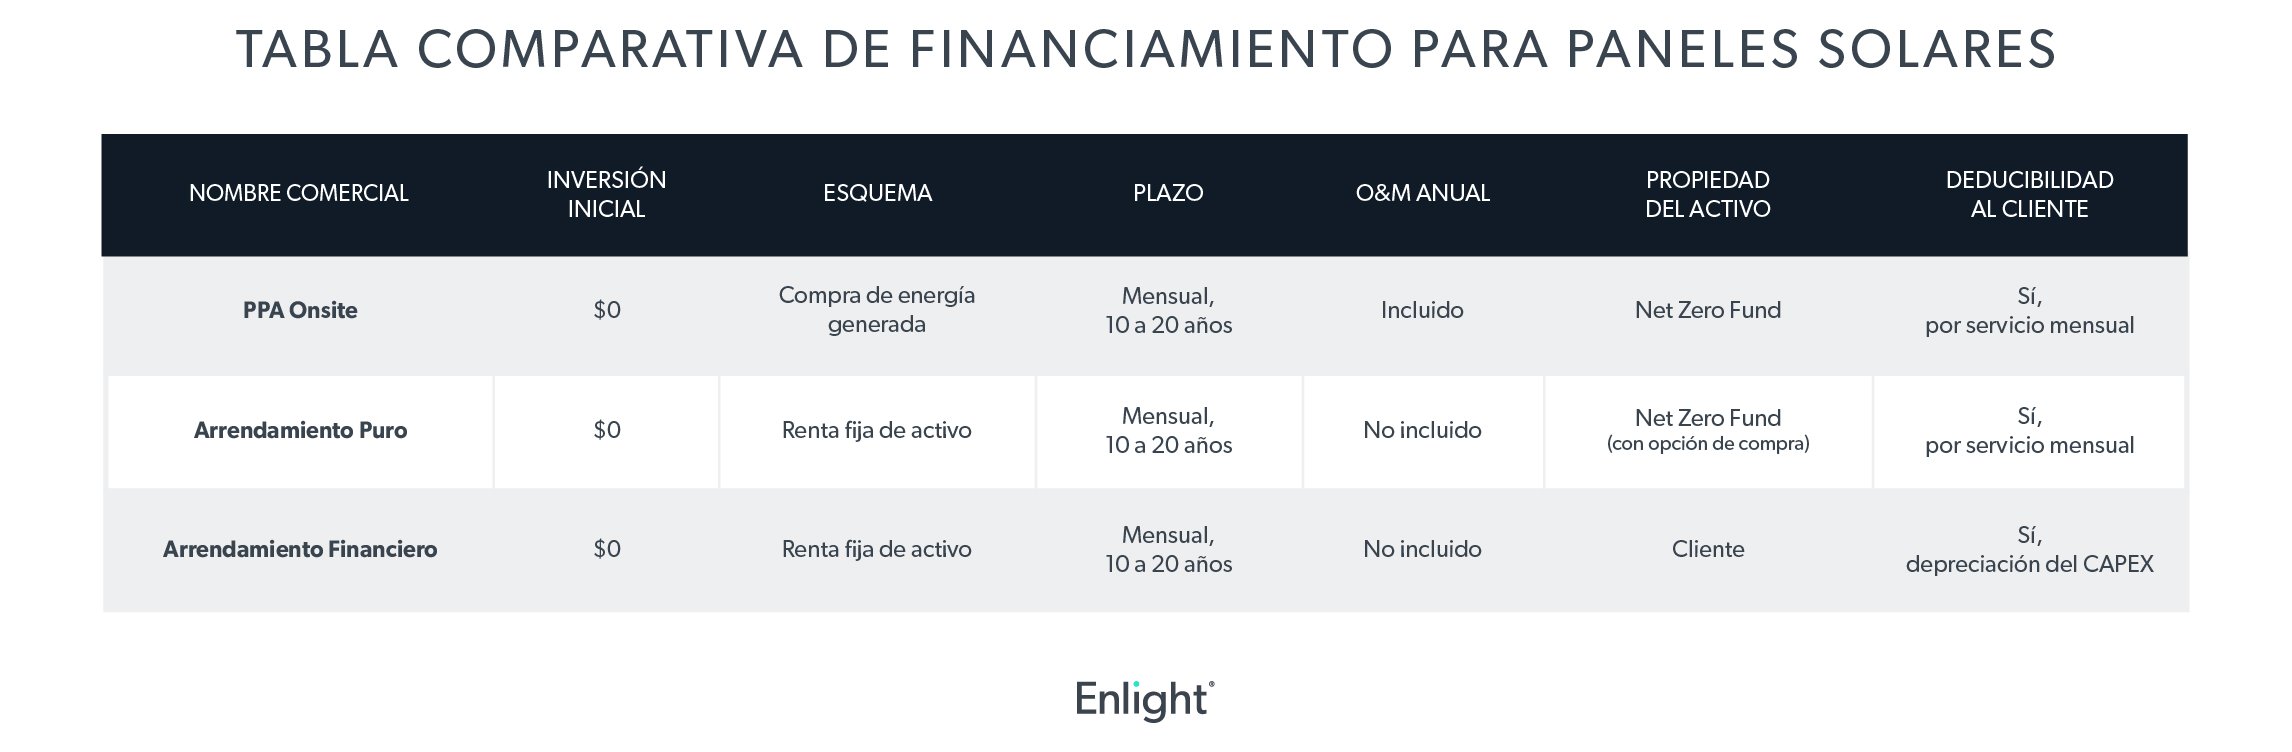 tabla_comparativa_opciones_de_financiamiento_para_paneles_solares